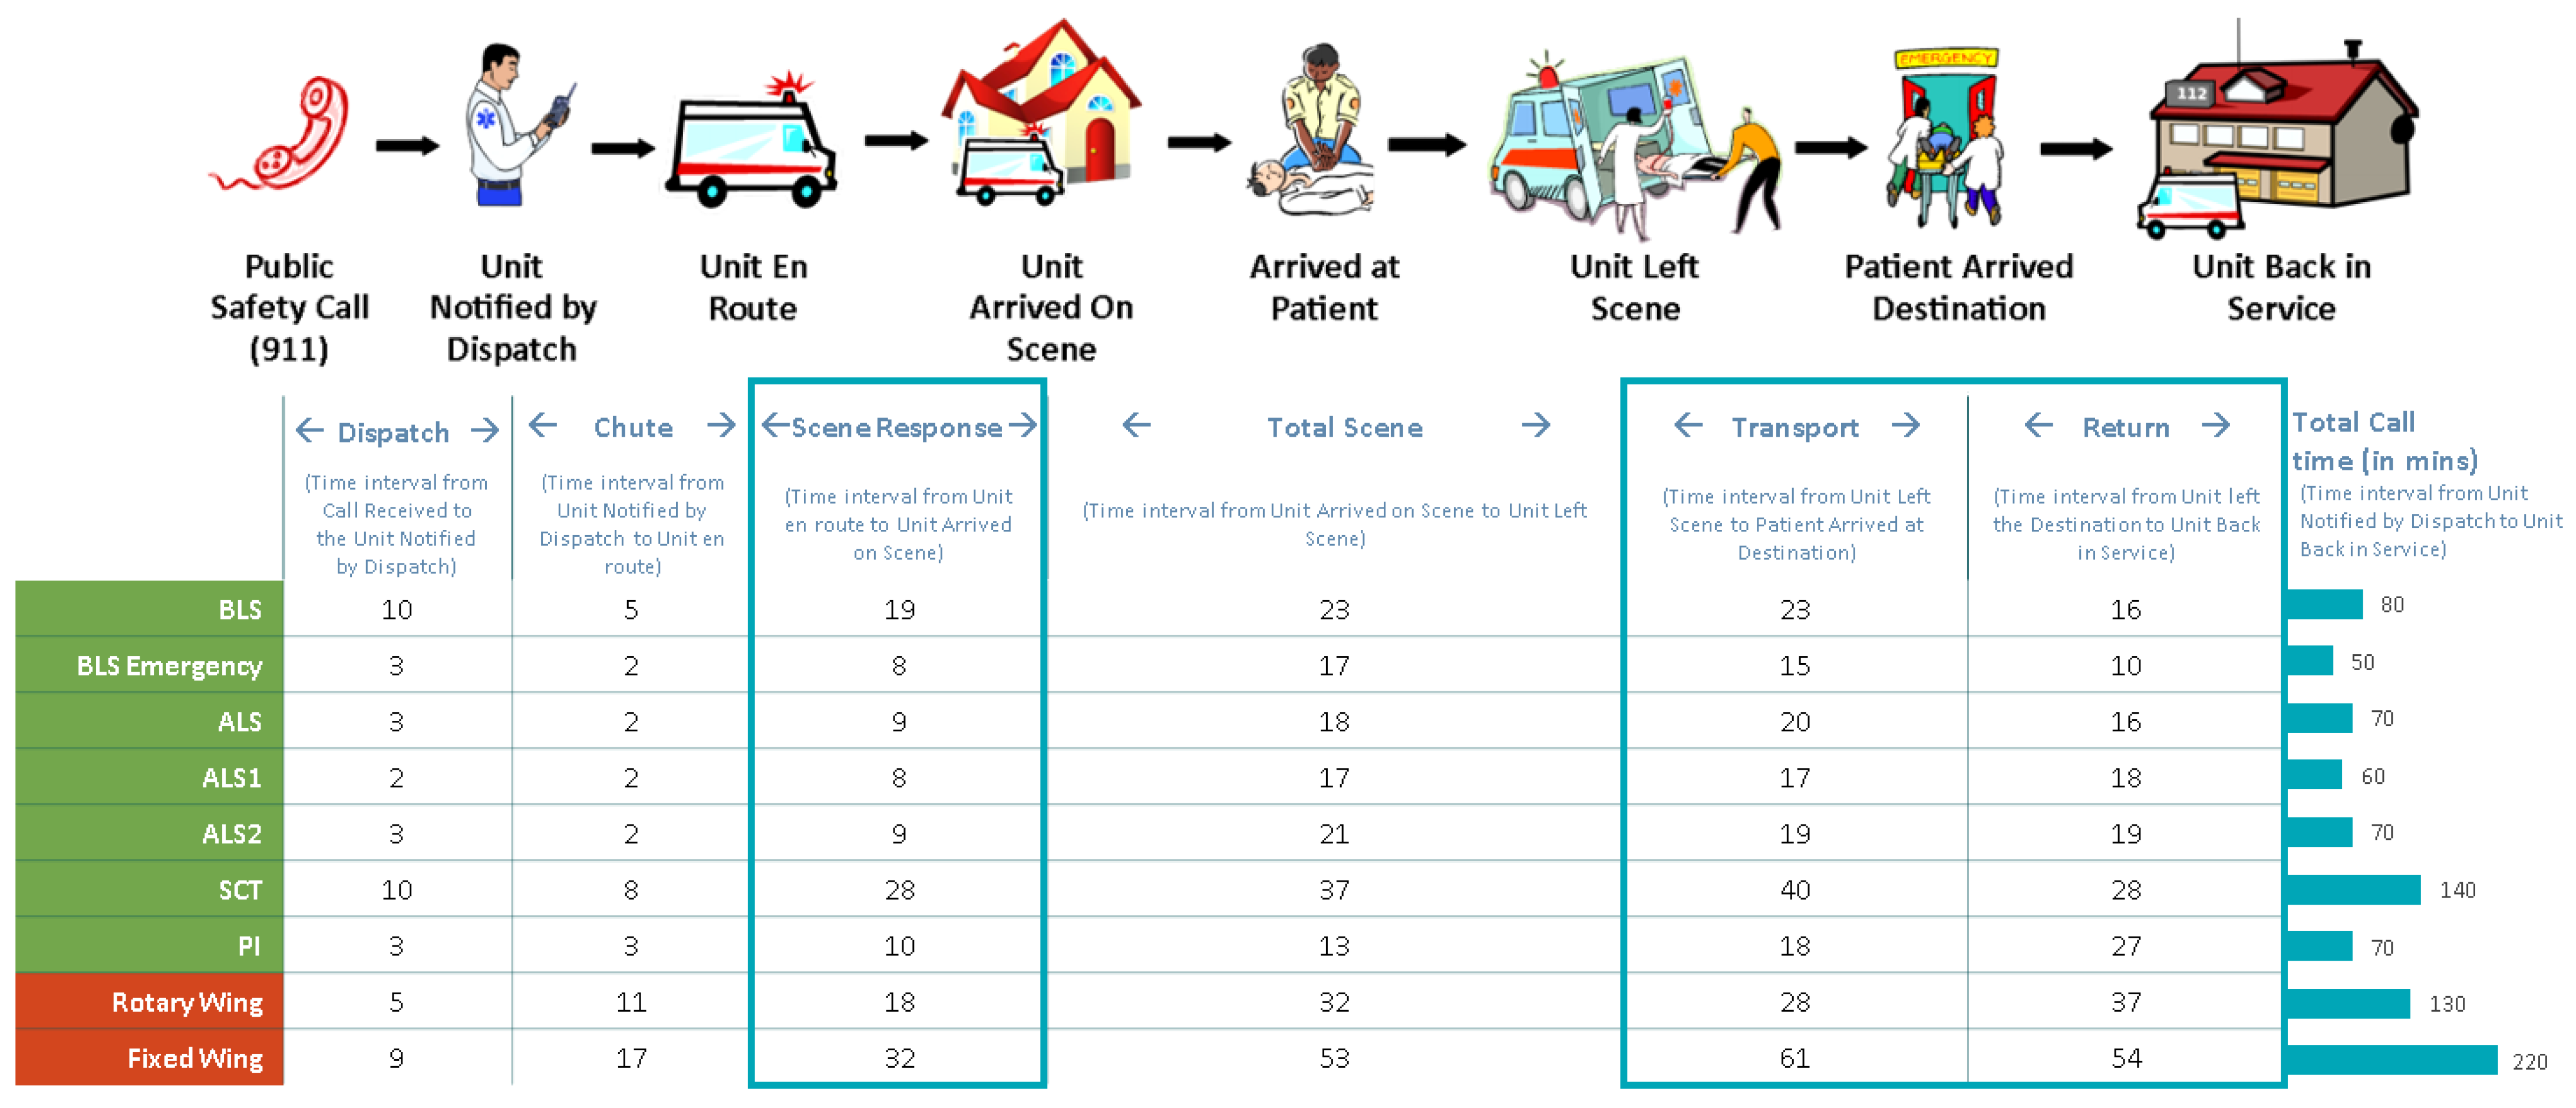 Safety Standards for Ambulances — STAT